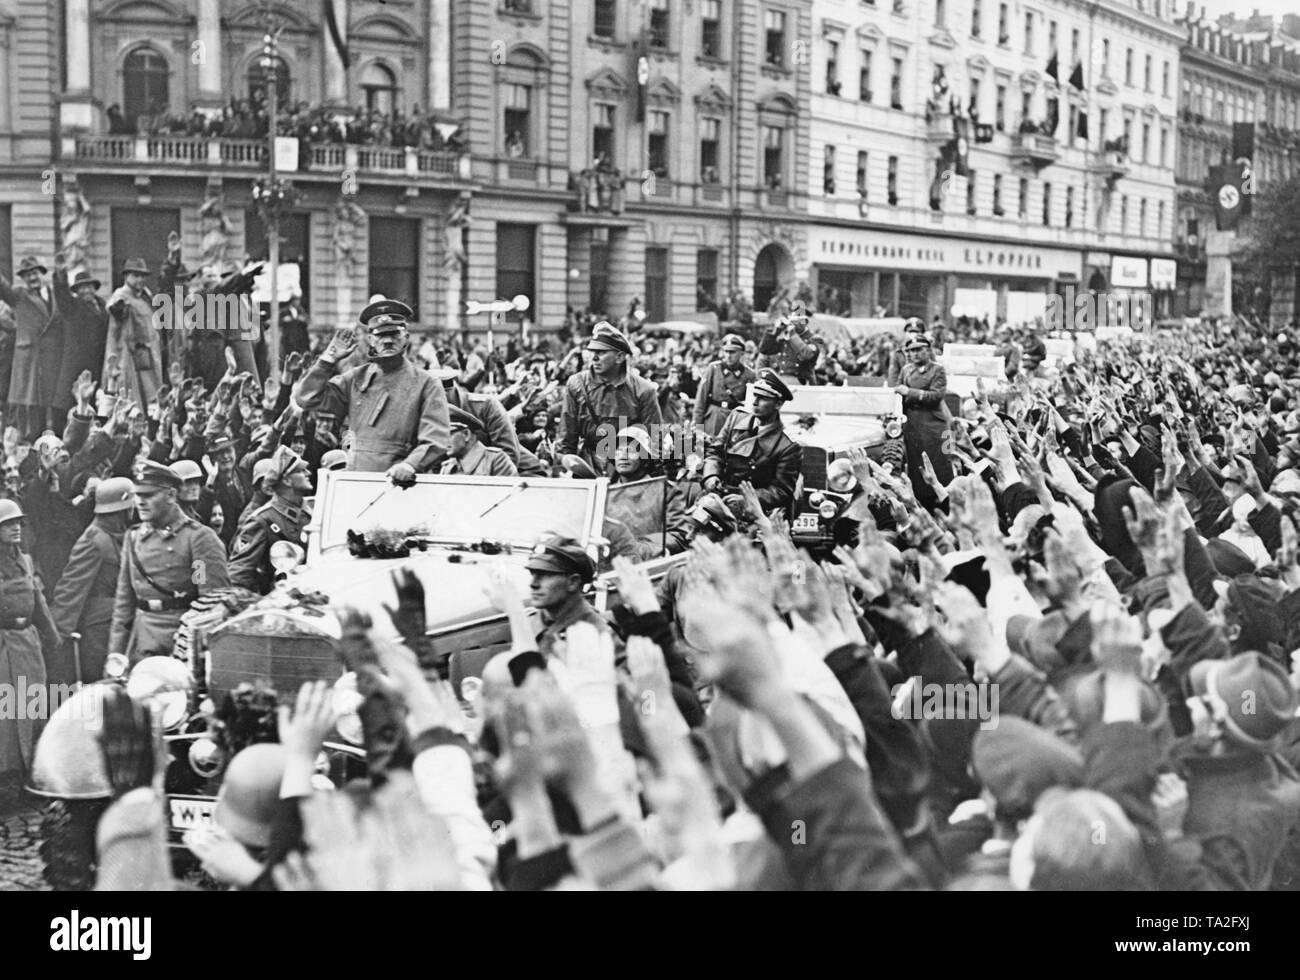 Adolf Hitler heute in Karlsbad (Karlovy Vary) am 4. Oktober 1938. Seine wagenkolonne ist fröhlich durch die Bevölkerung. Sie wünscht ihm den Hitlergruß. In seinem Auto im wieder auf den richtigen, Adjutant der Luftwaffe Nicolaus von Unten. Sitzt vor ihm, General Walter von Reichenau. Die Bodyguards der SS folgen mit anderen Autos. Stockfoto